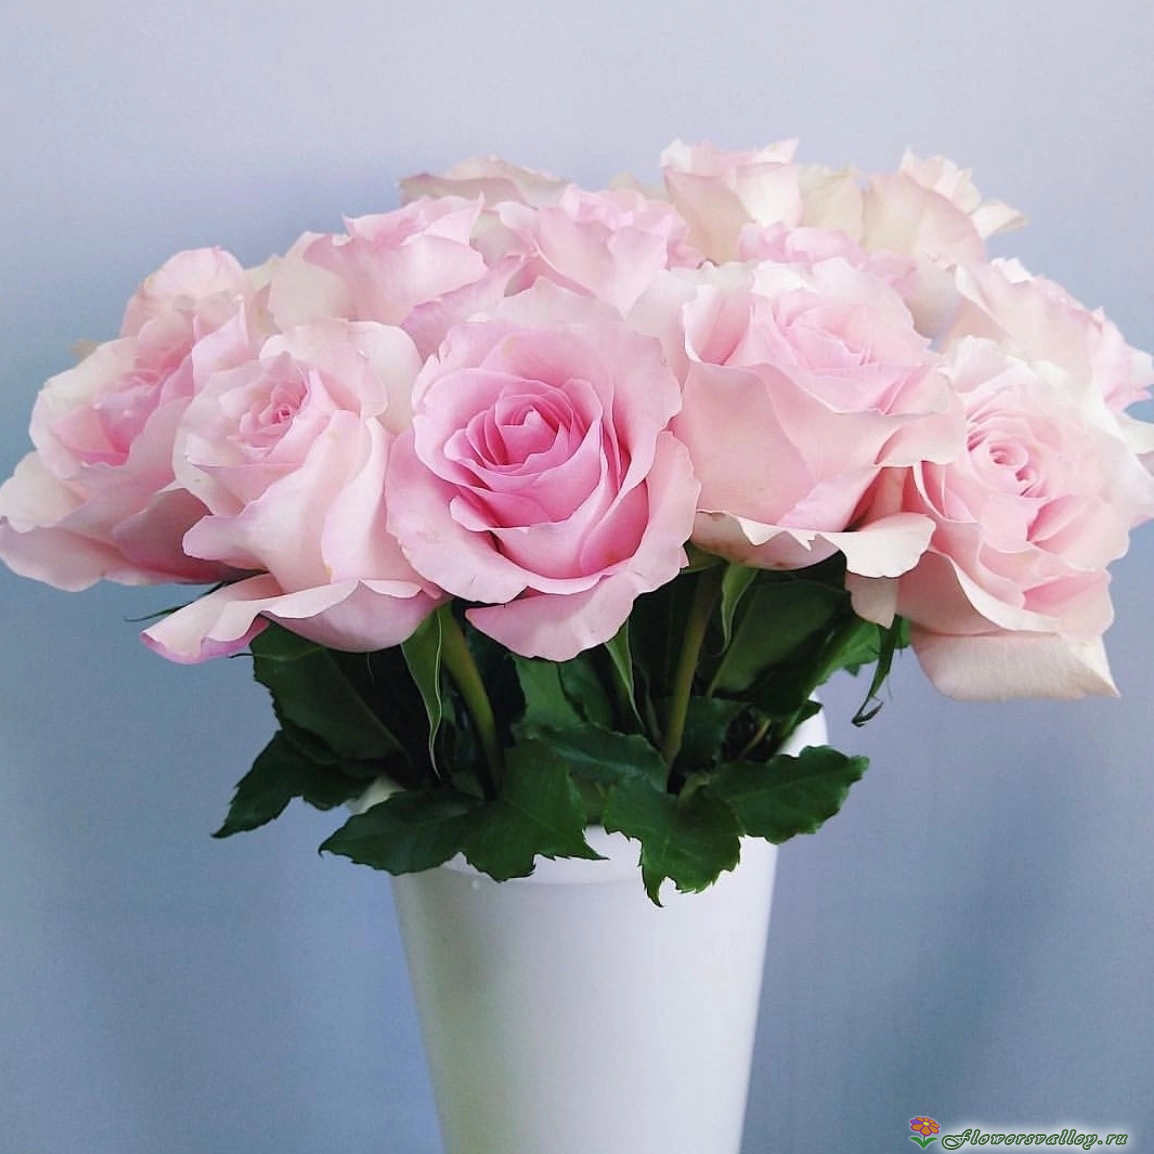 Букет из 15 роз Криста (сорт "Crista", пр-во Эквадор) фото 3